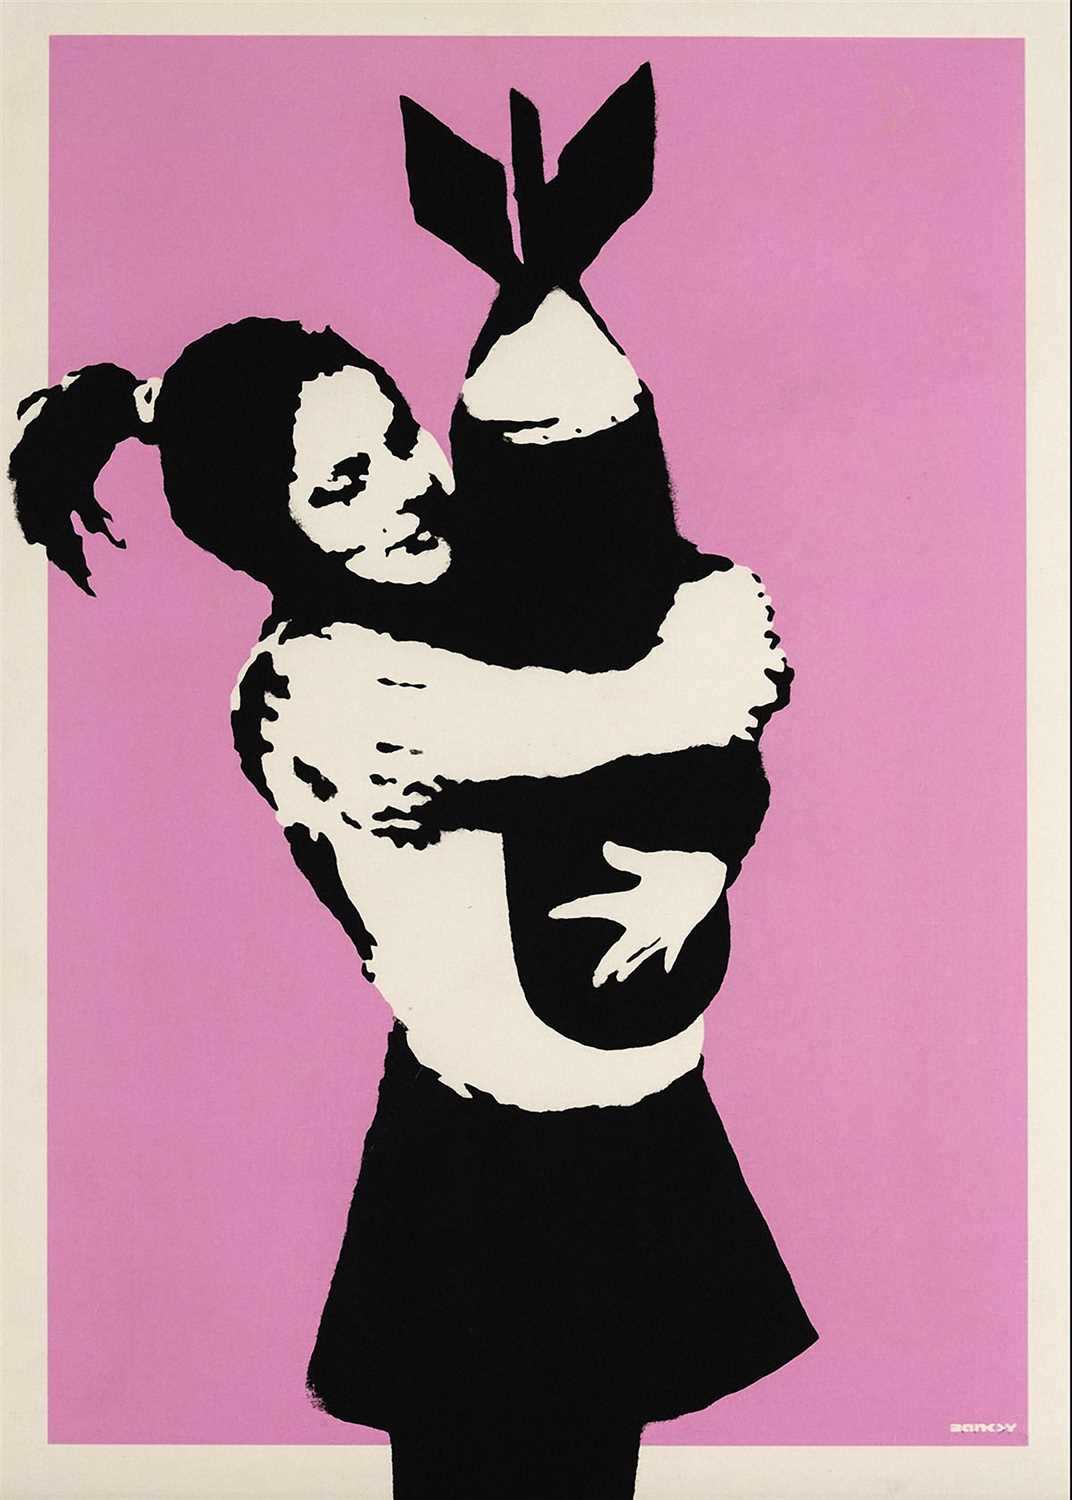 Lot 136 - Banksy (British 1974-), 'Bomb Hugger', 2003